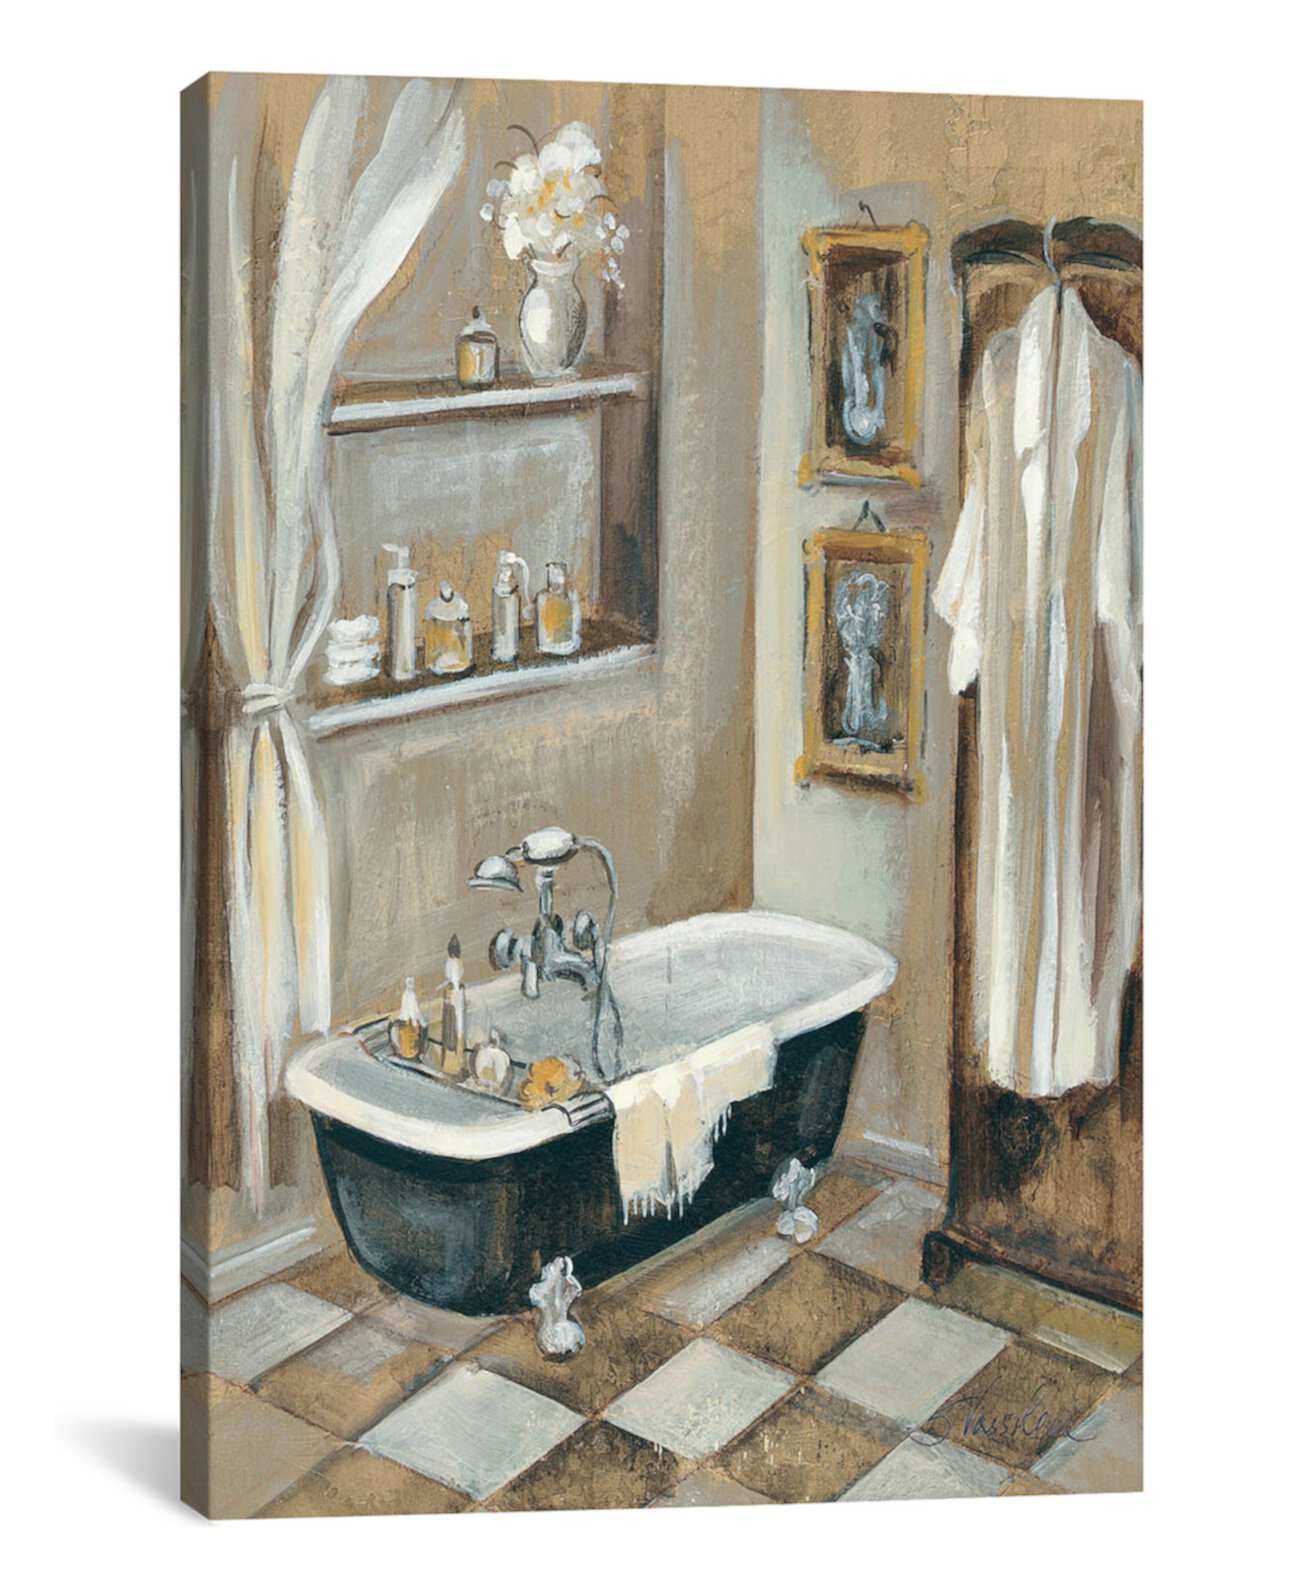 Картина в ванную комнату. Картины для ванной комнаты. Живопись для ванной комнаты. Картины в ванной комнате в интерьере. Картины в туалетную комнату.